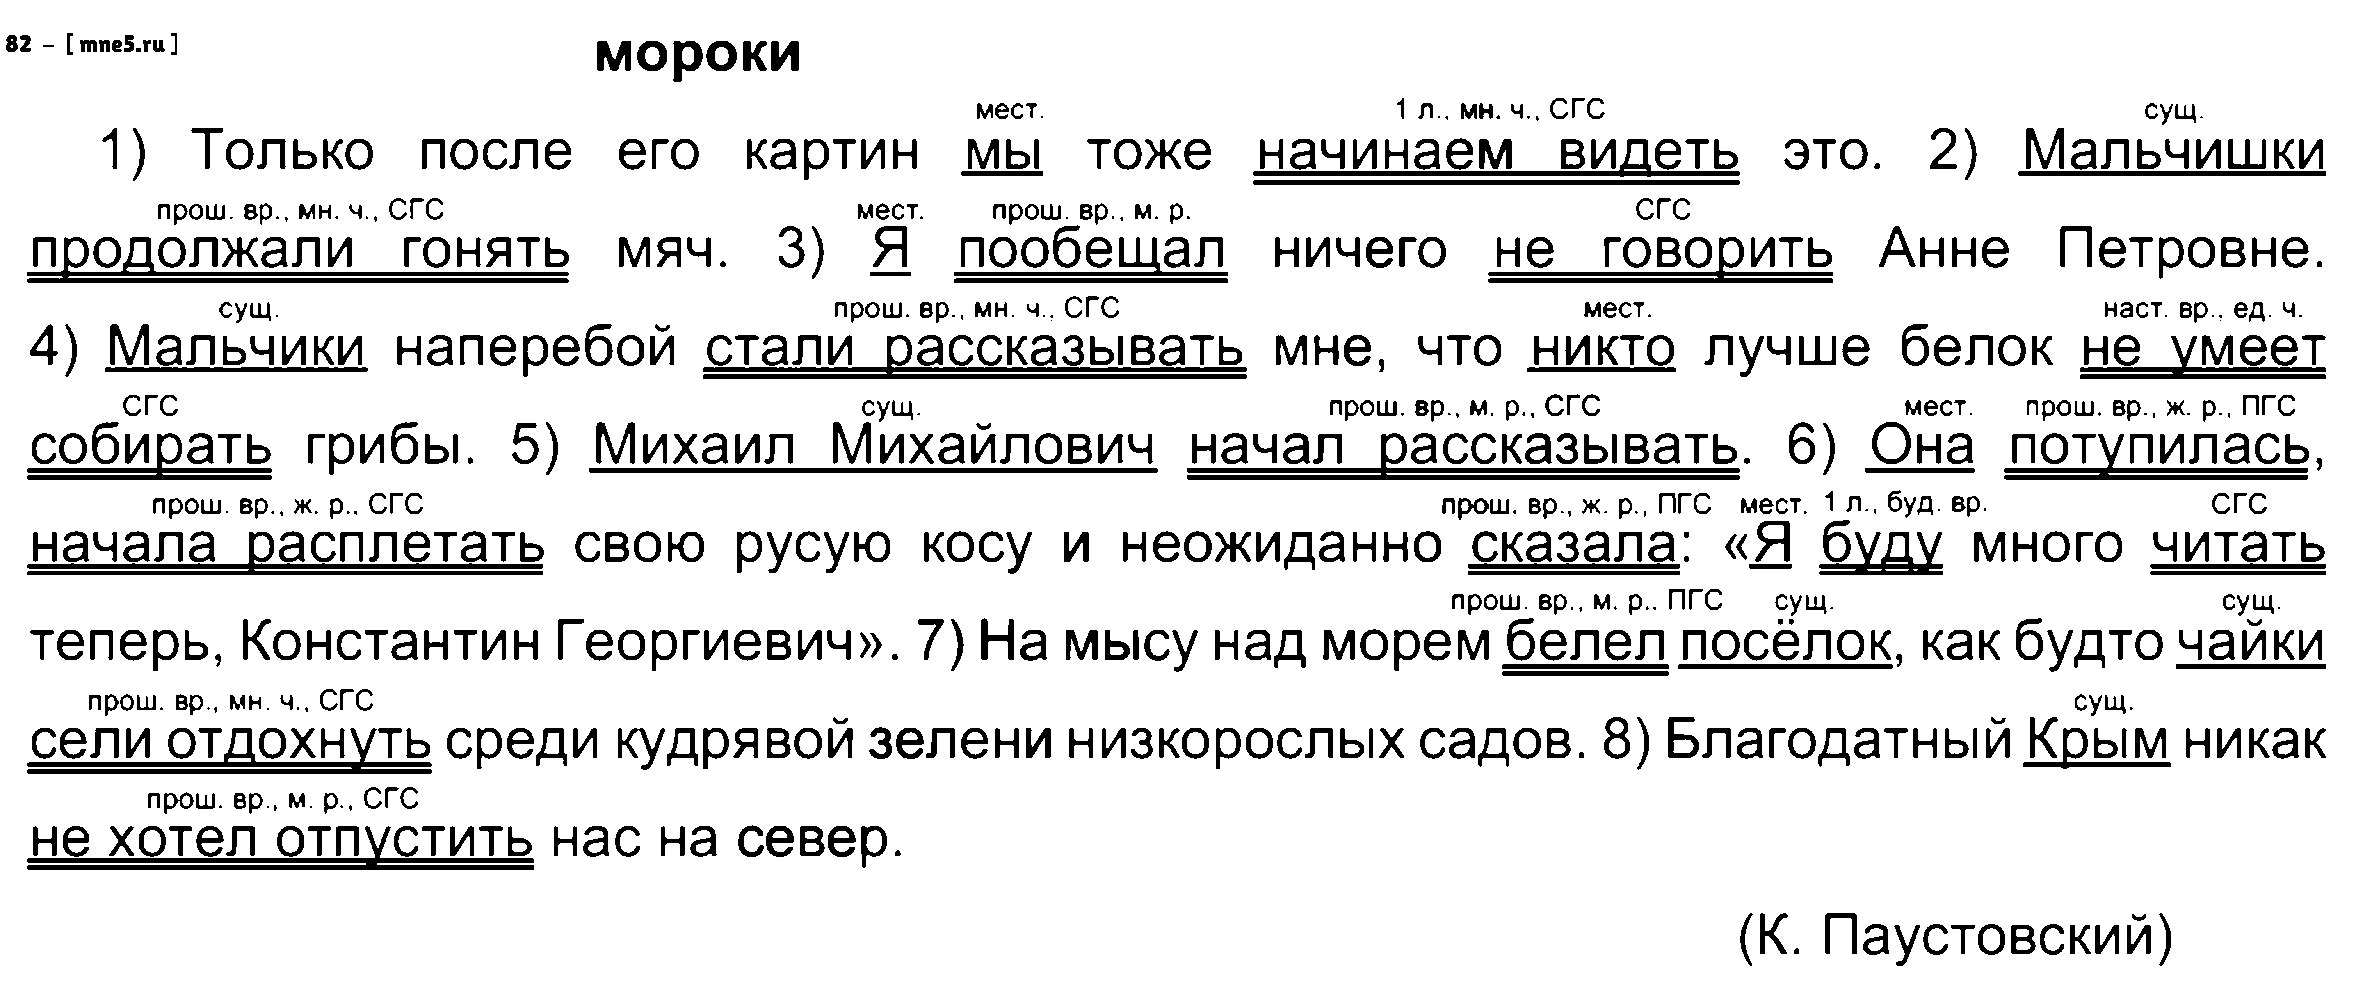 ГДЗ Русский язык 8 класс - 82